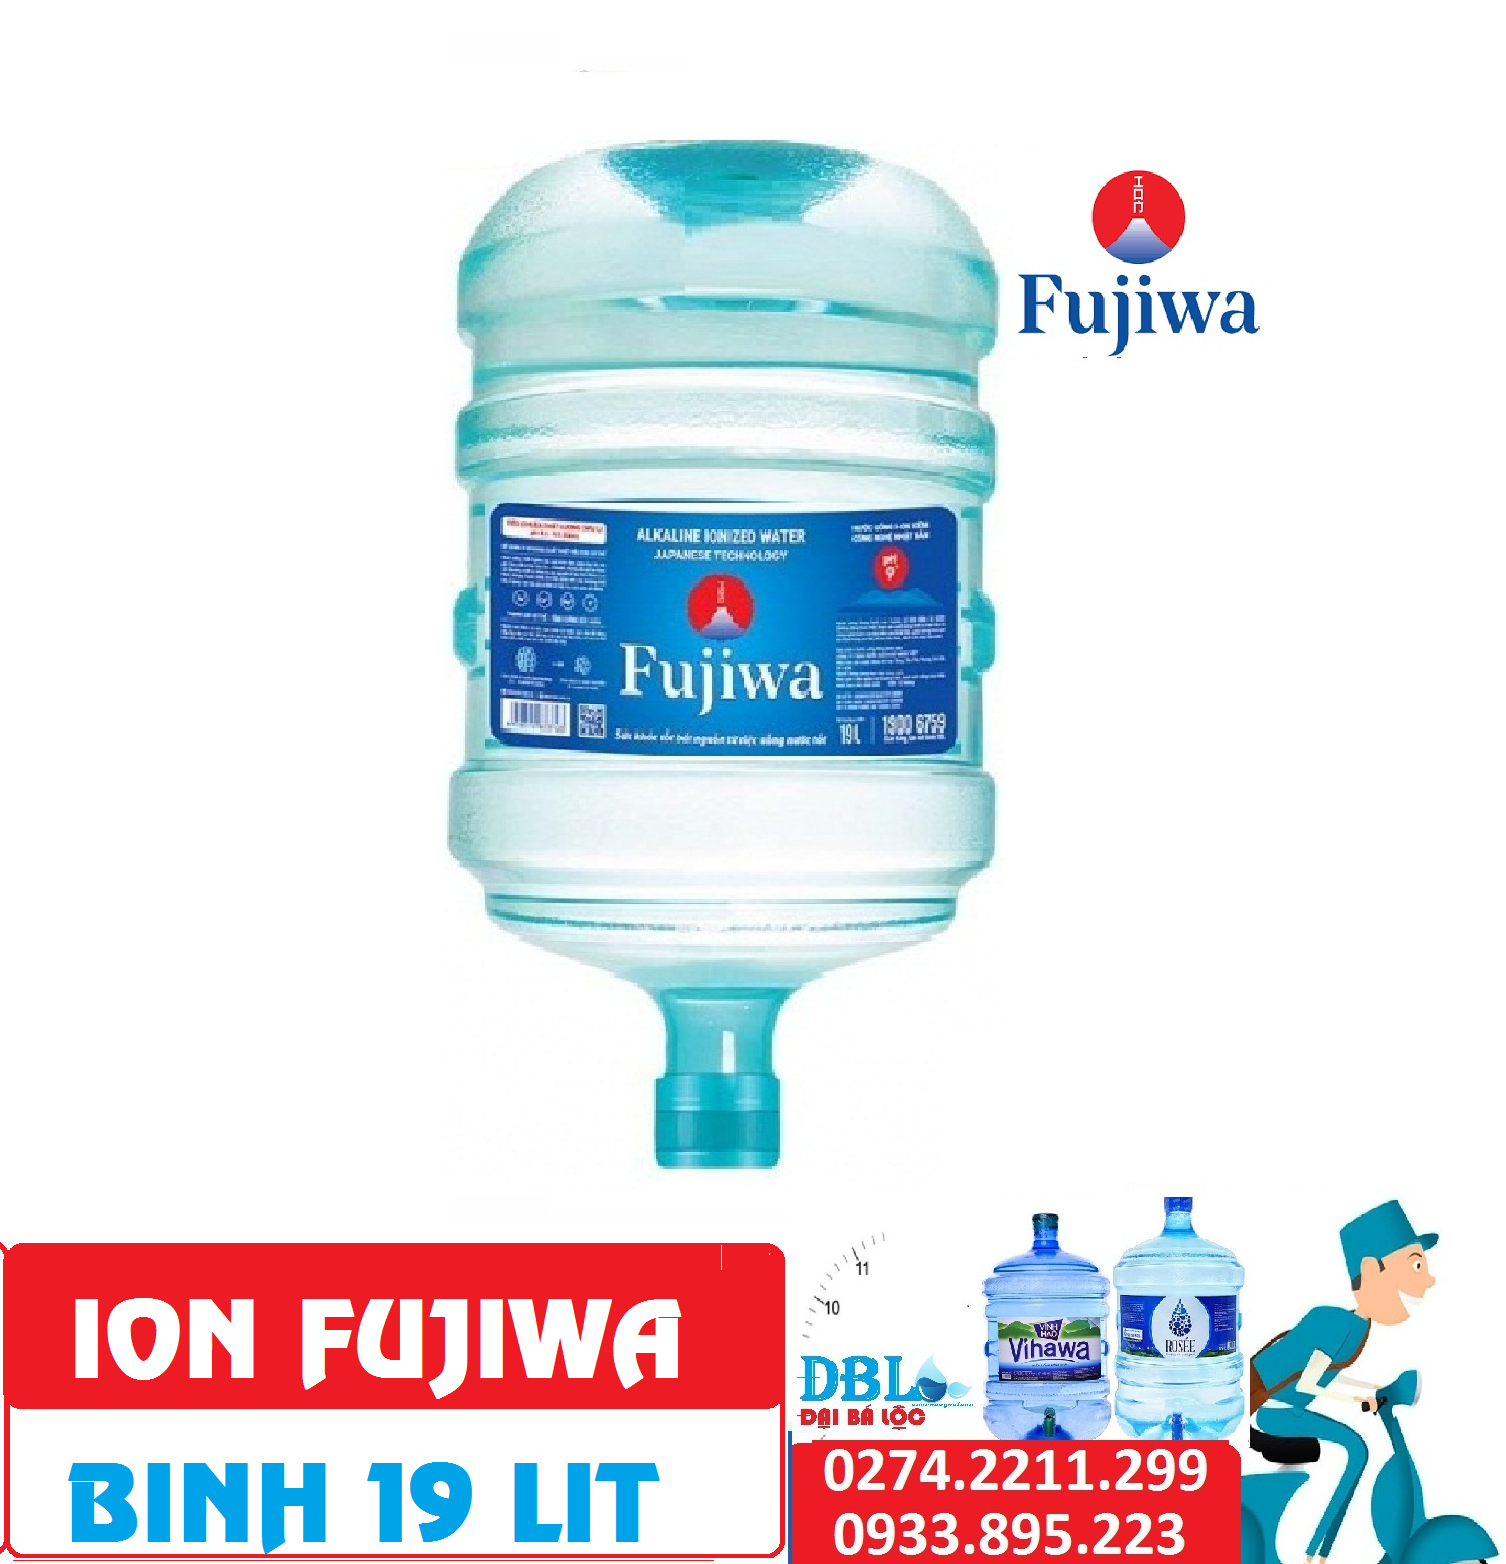 ion fujiwa 19 up